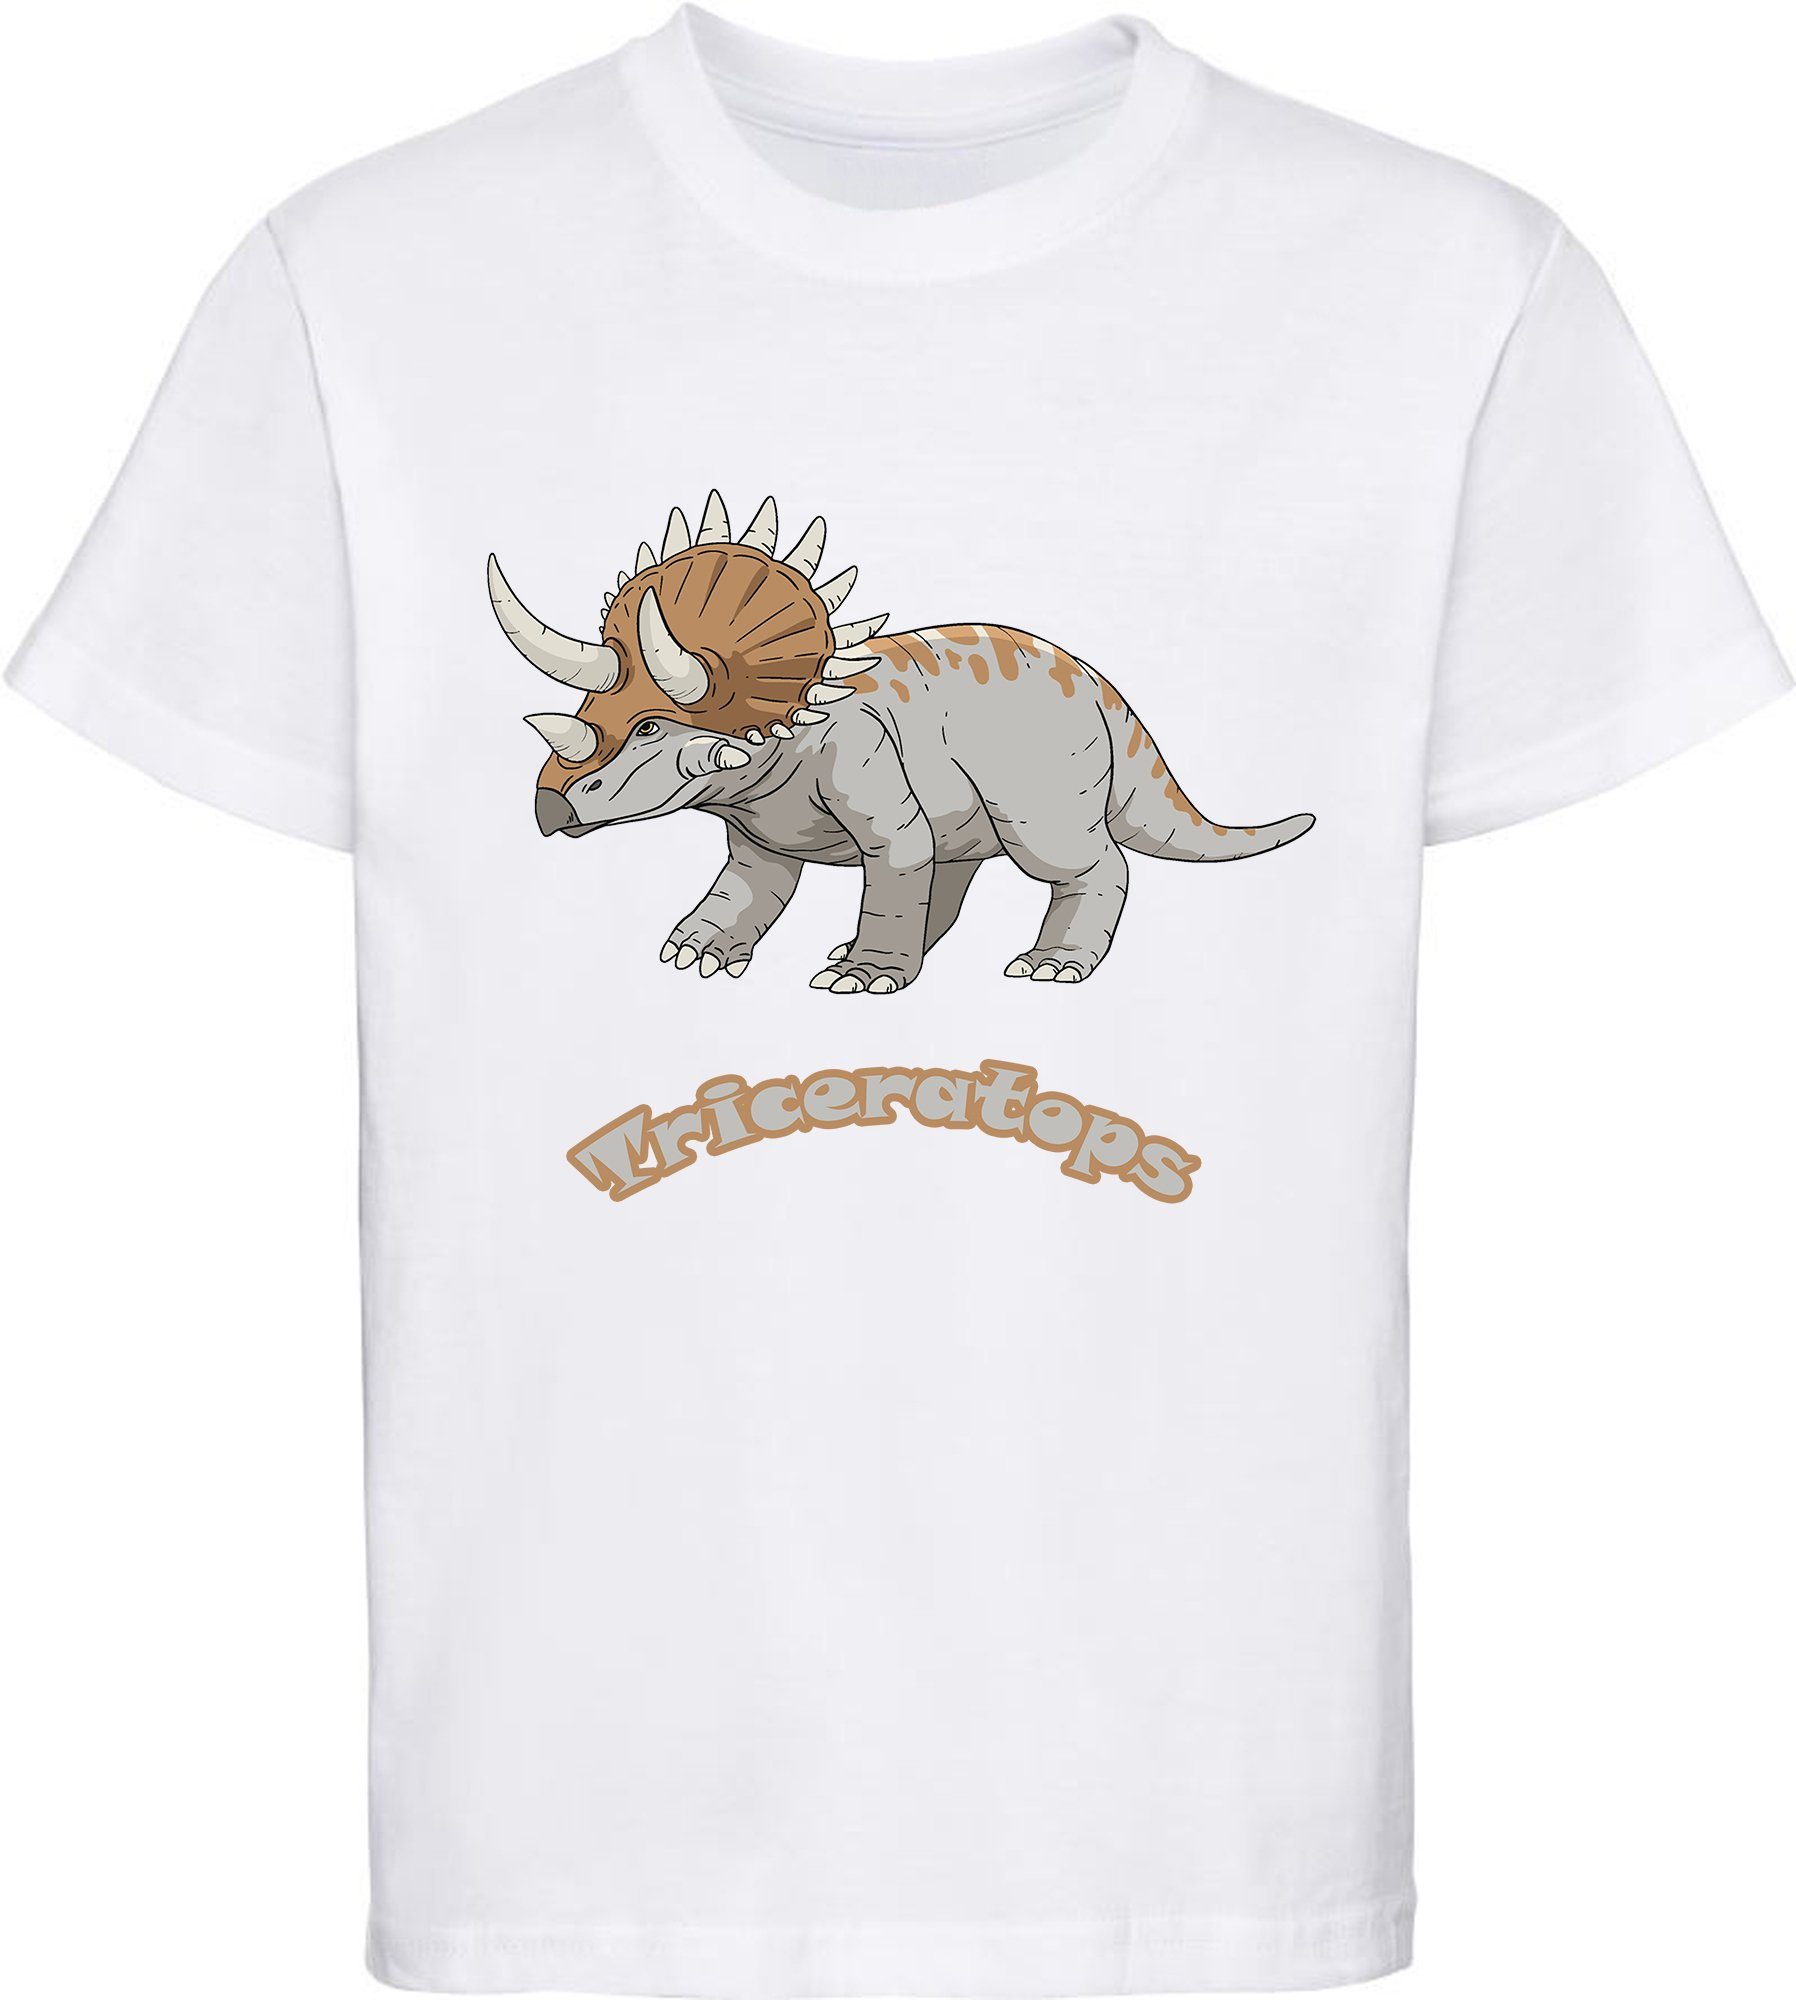 T-Shirt MyDesign24 weiss Triceratops Aufdruck, Dino 100% mit mit i52 bedrucktes Kinder T-Shirt Baumwolle